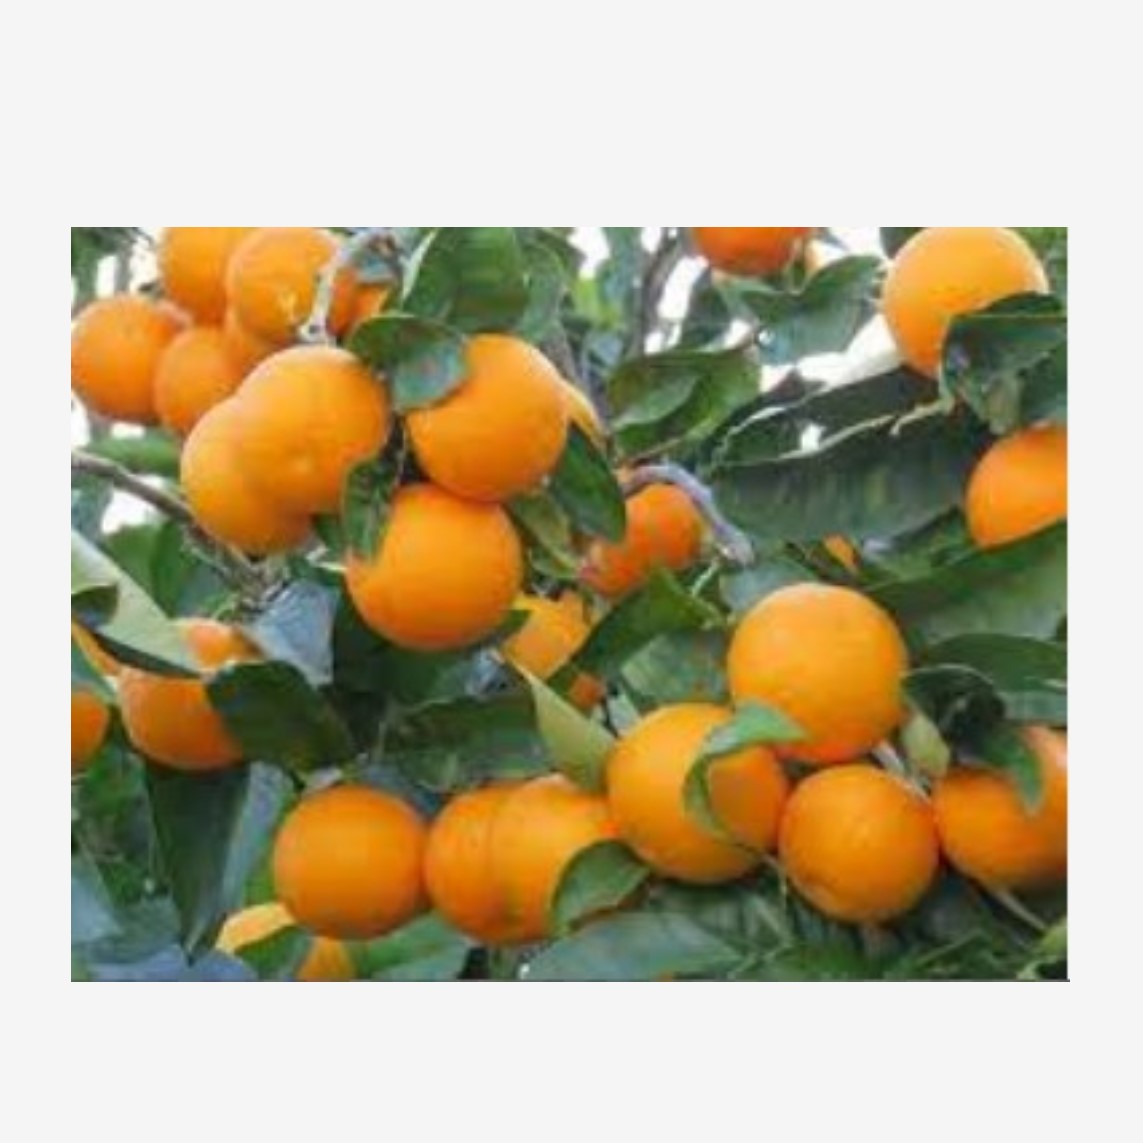 پرتقال دزفول در وب سایت گل میوه